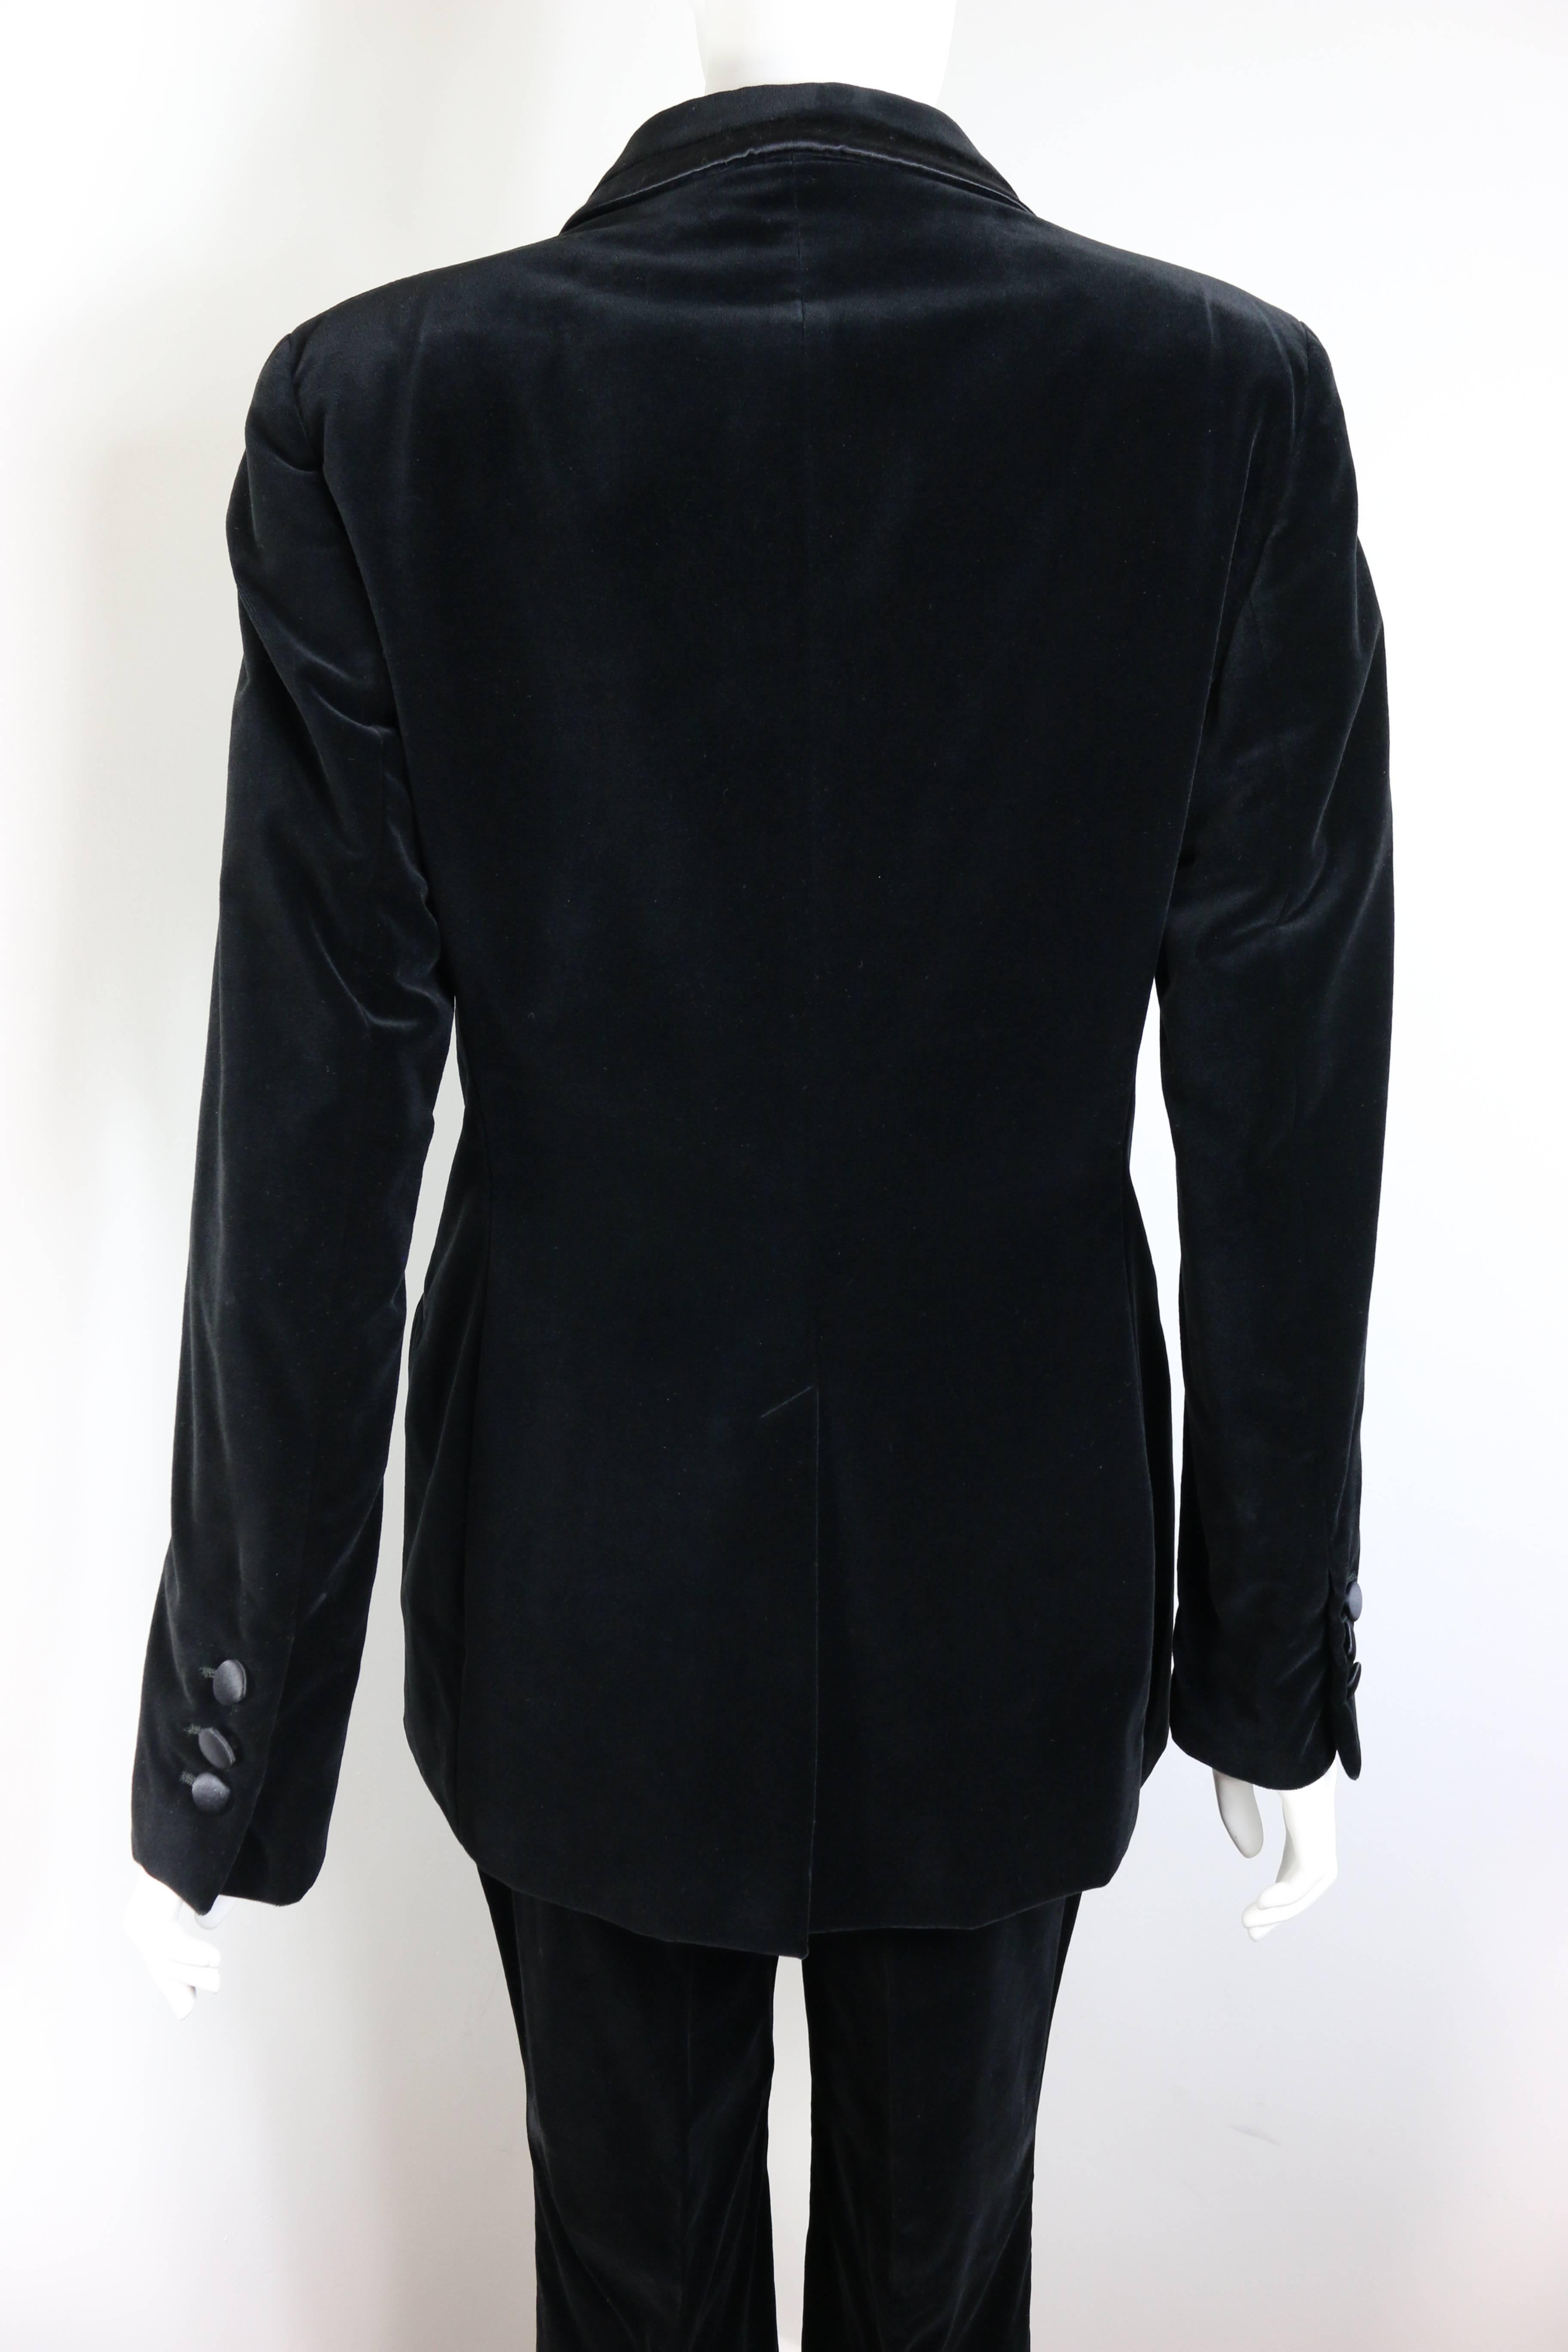 Women's or Men's Iconic Gucci By Tom Ford Black Velvet Tuxedo Suit ( Unworn) For Sale